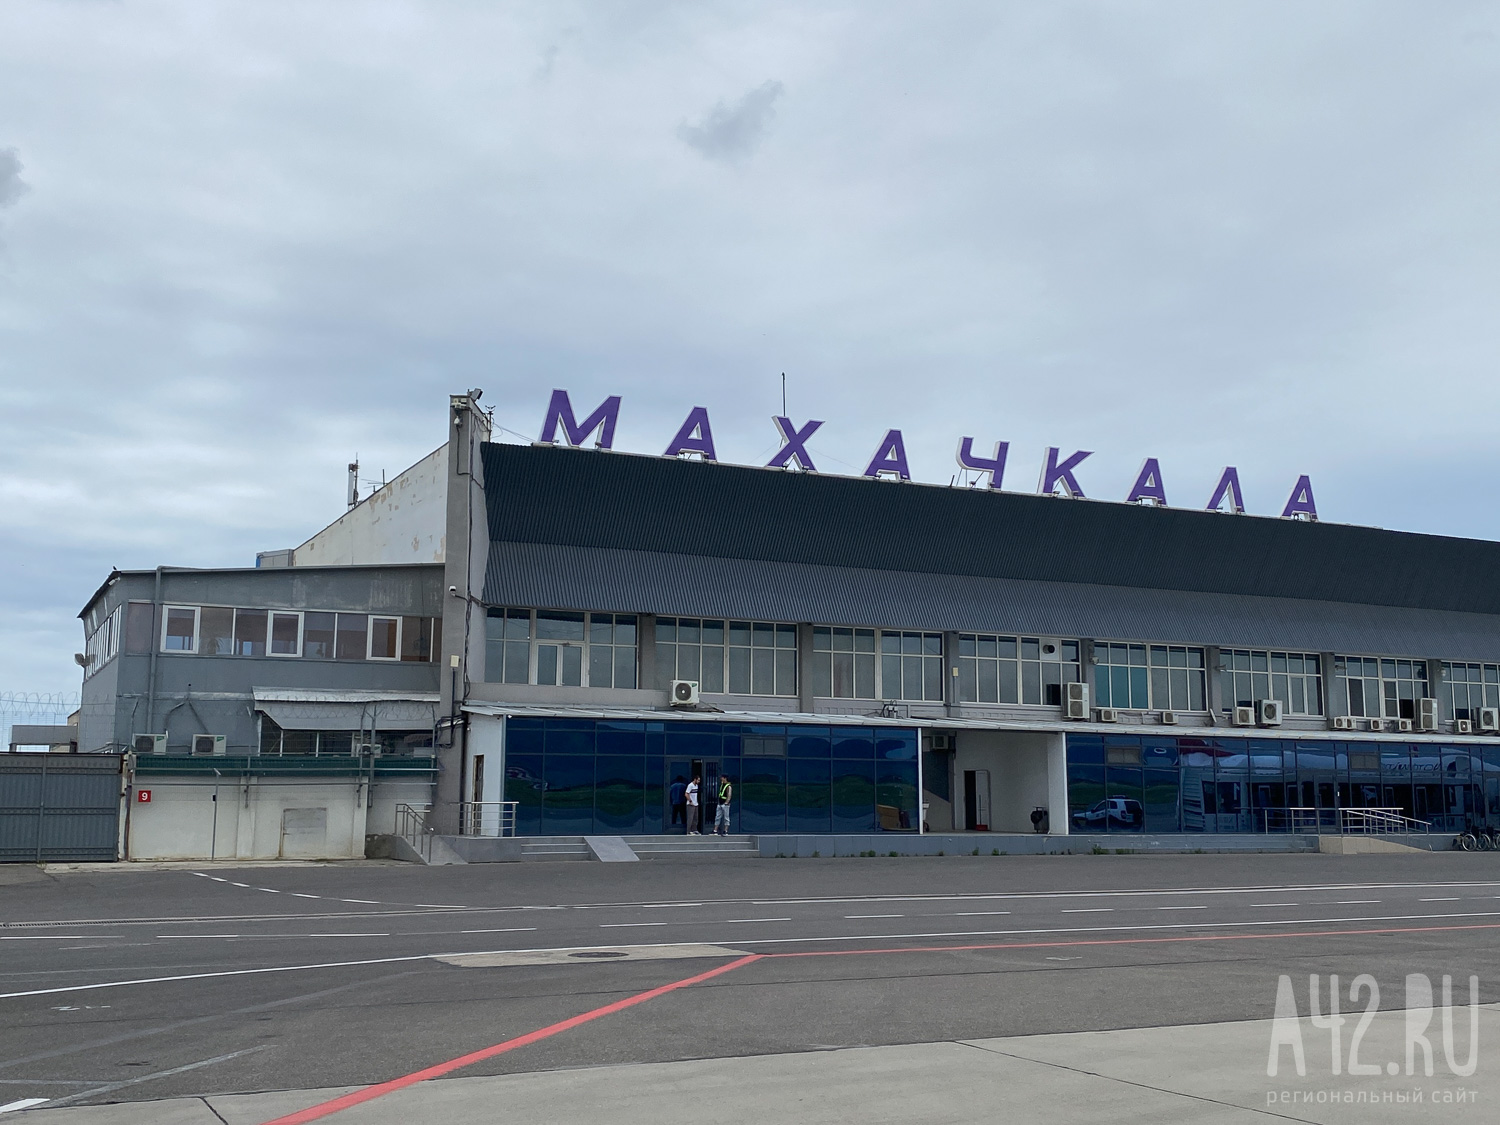 Прокурор запросил от 7 до 10 лет для участников погромов в аэропорту Махачкалы